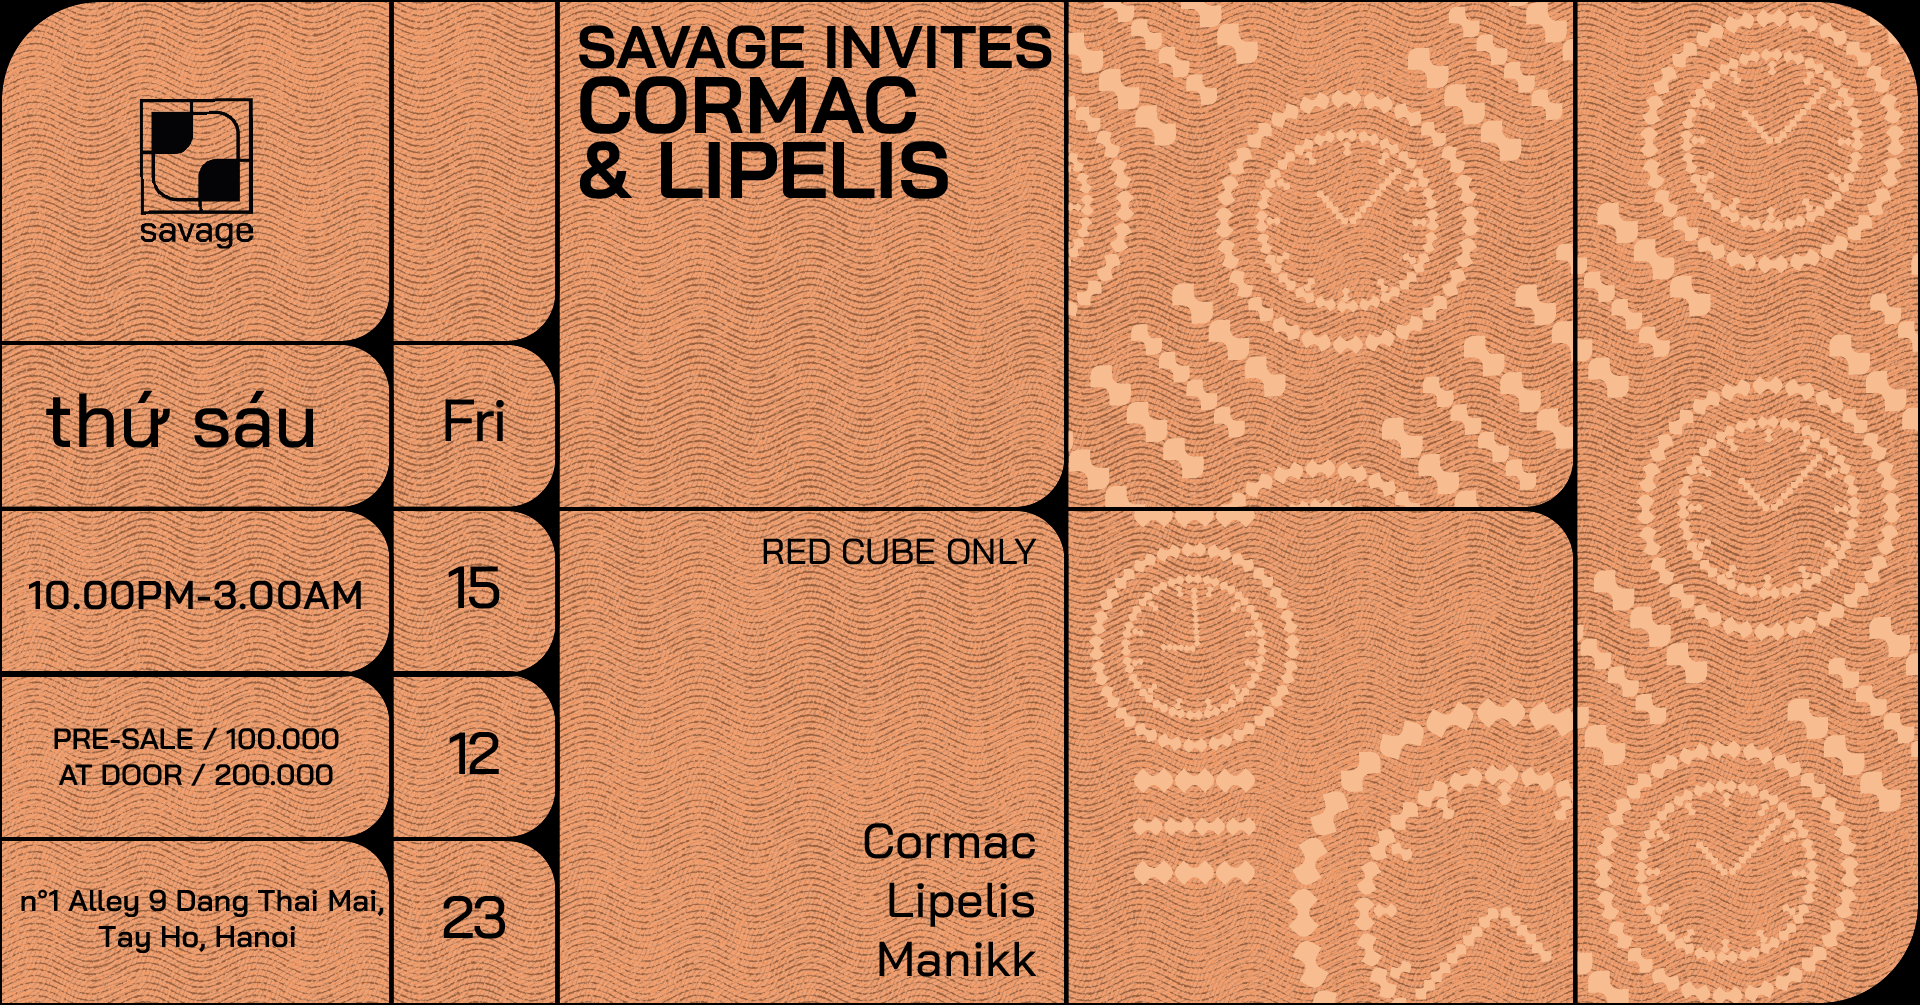 Savage Invites Cormac & Lipelis - Página trasera